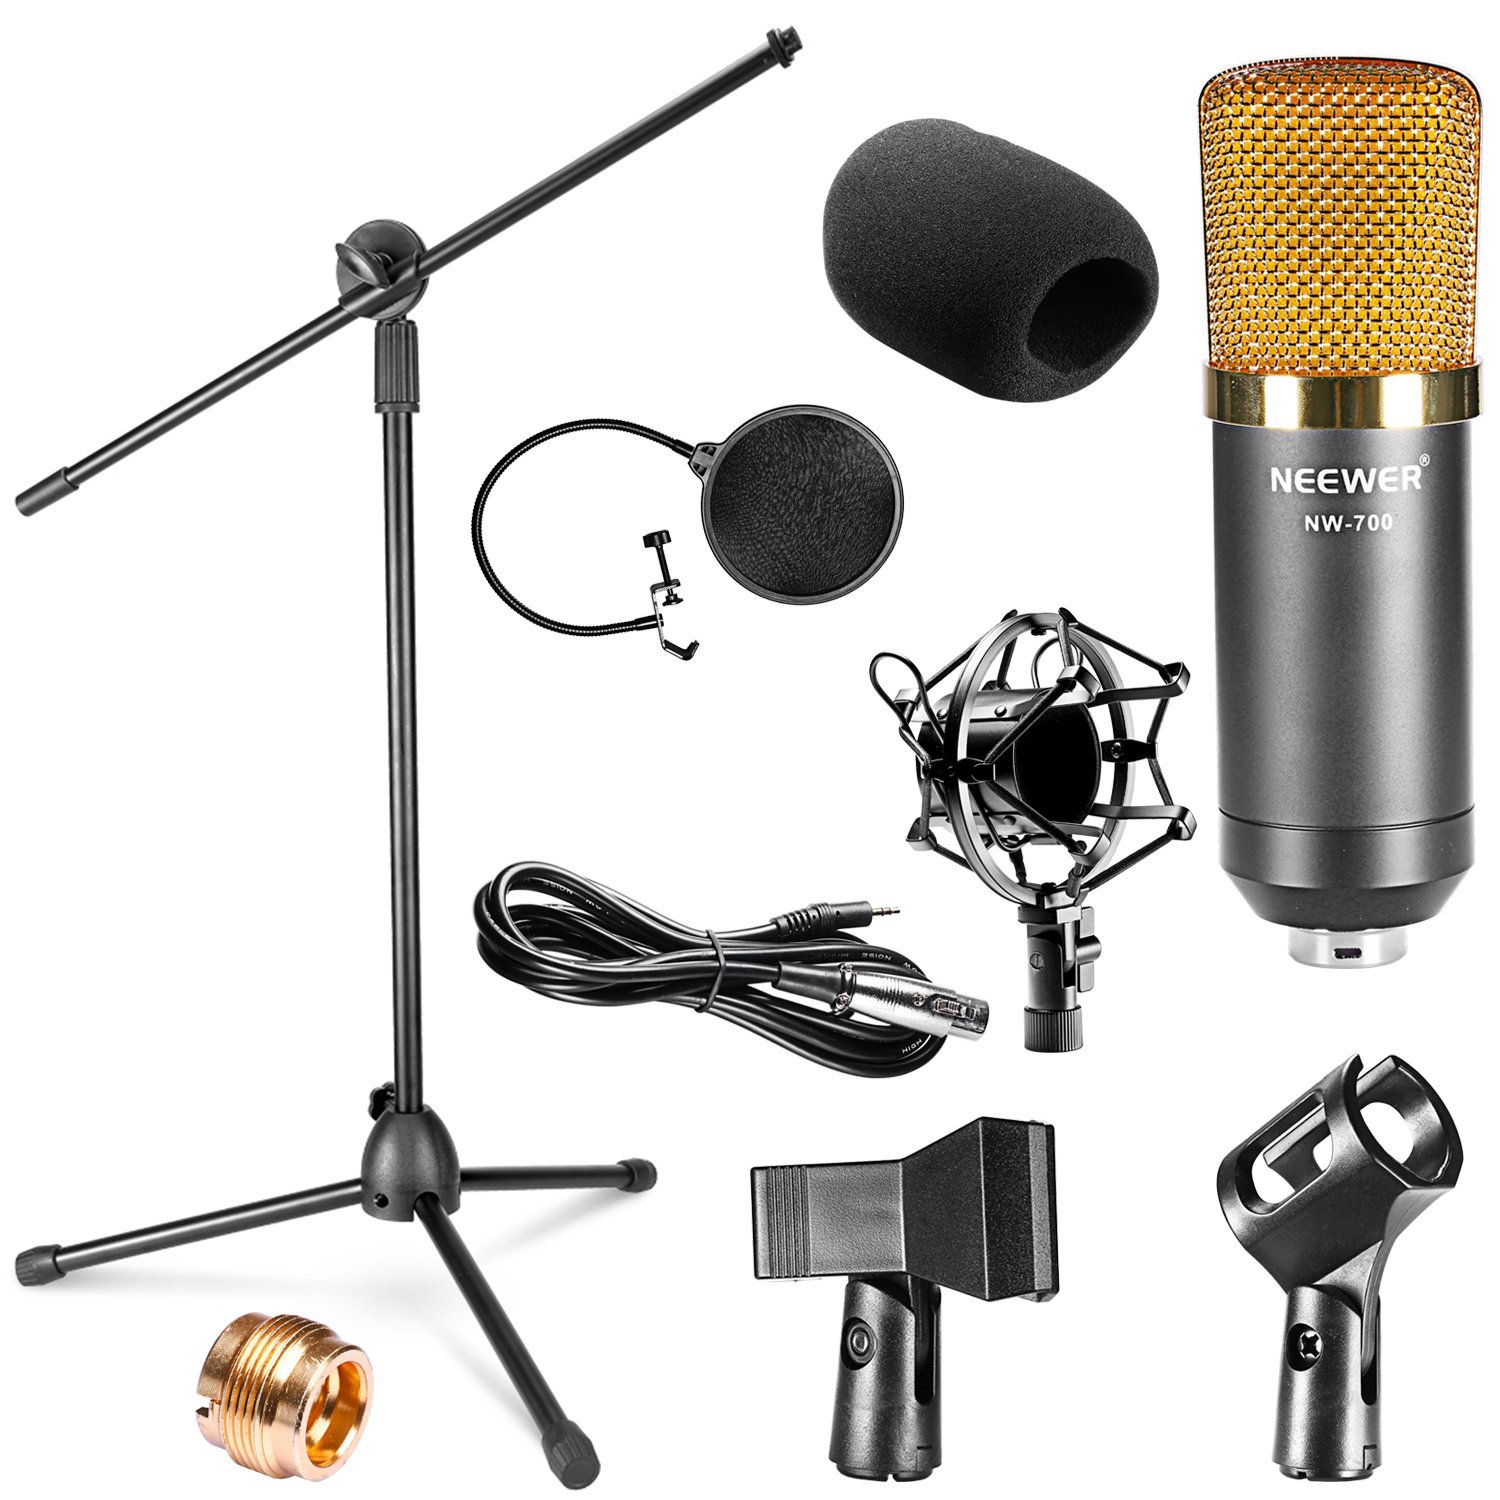 NW-700 Micrófono Condensador y Kit de Accesorios para Estudio